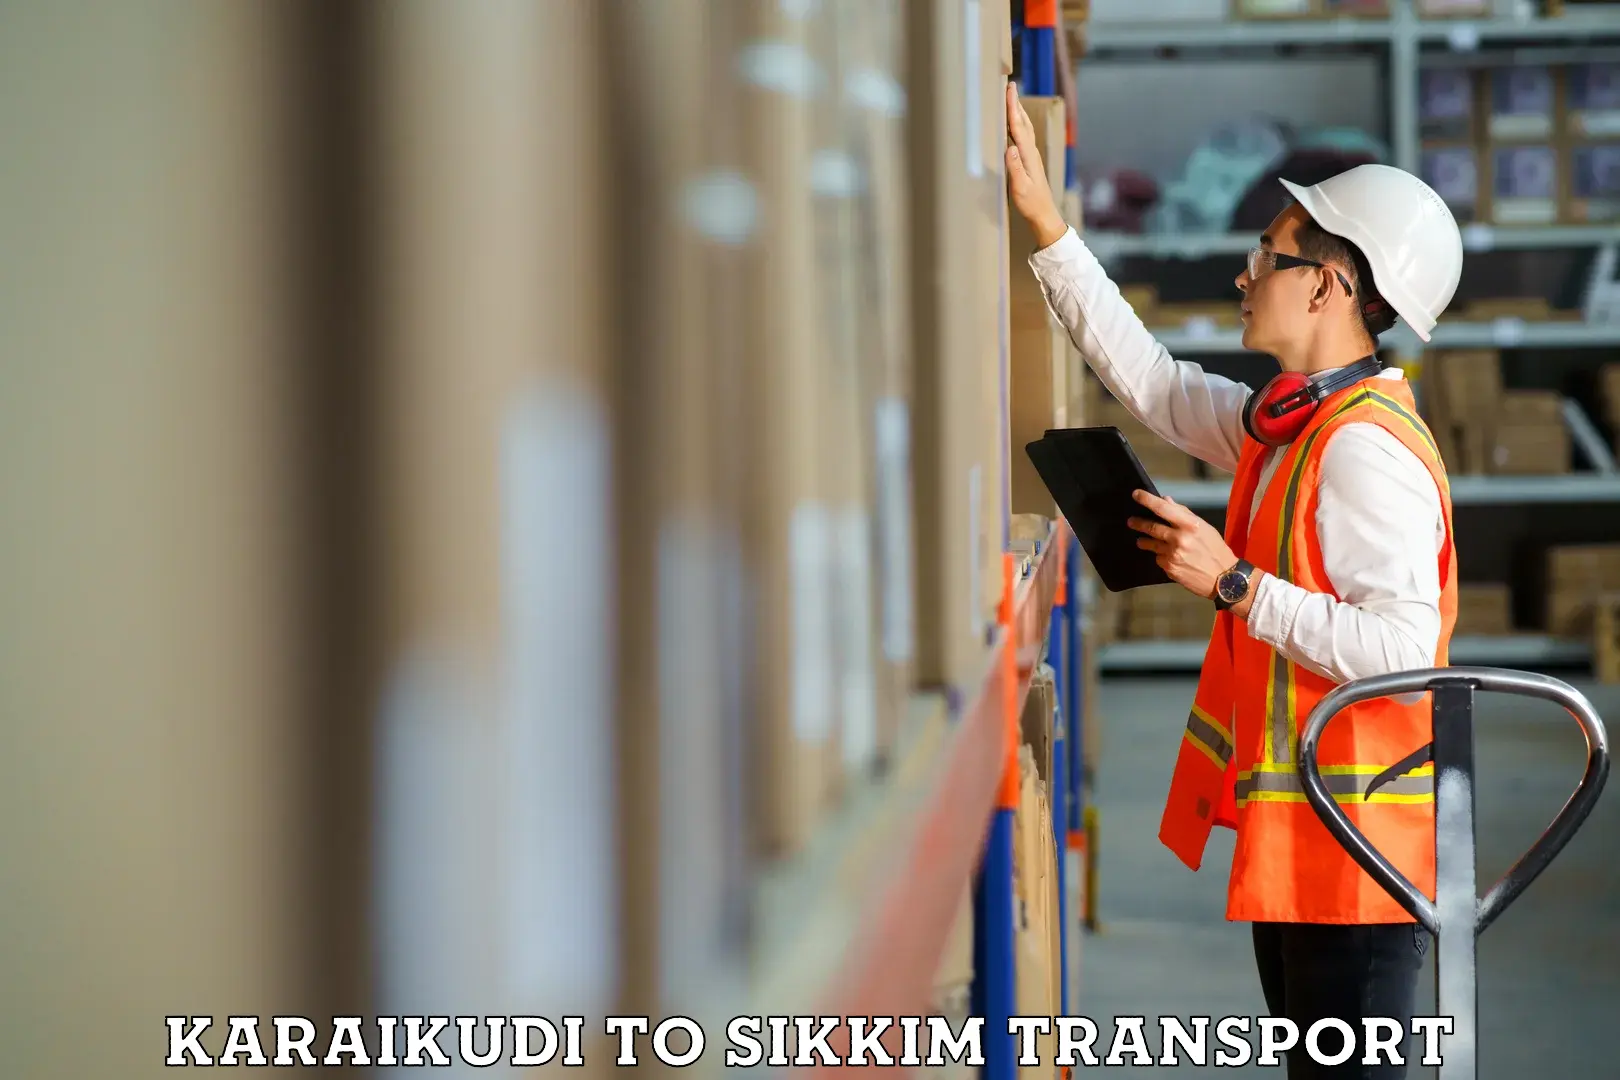 Commercial transport service Karaikudi to Namchi